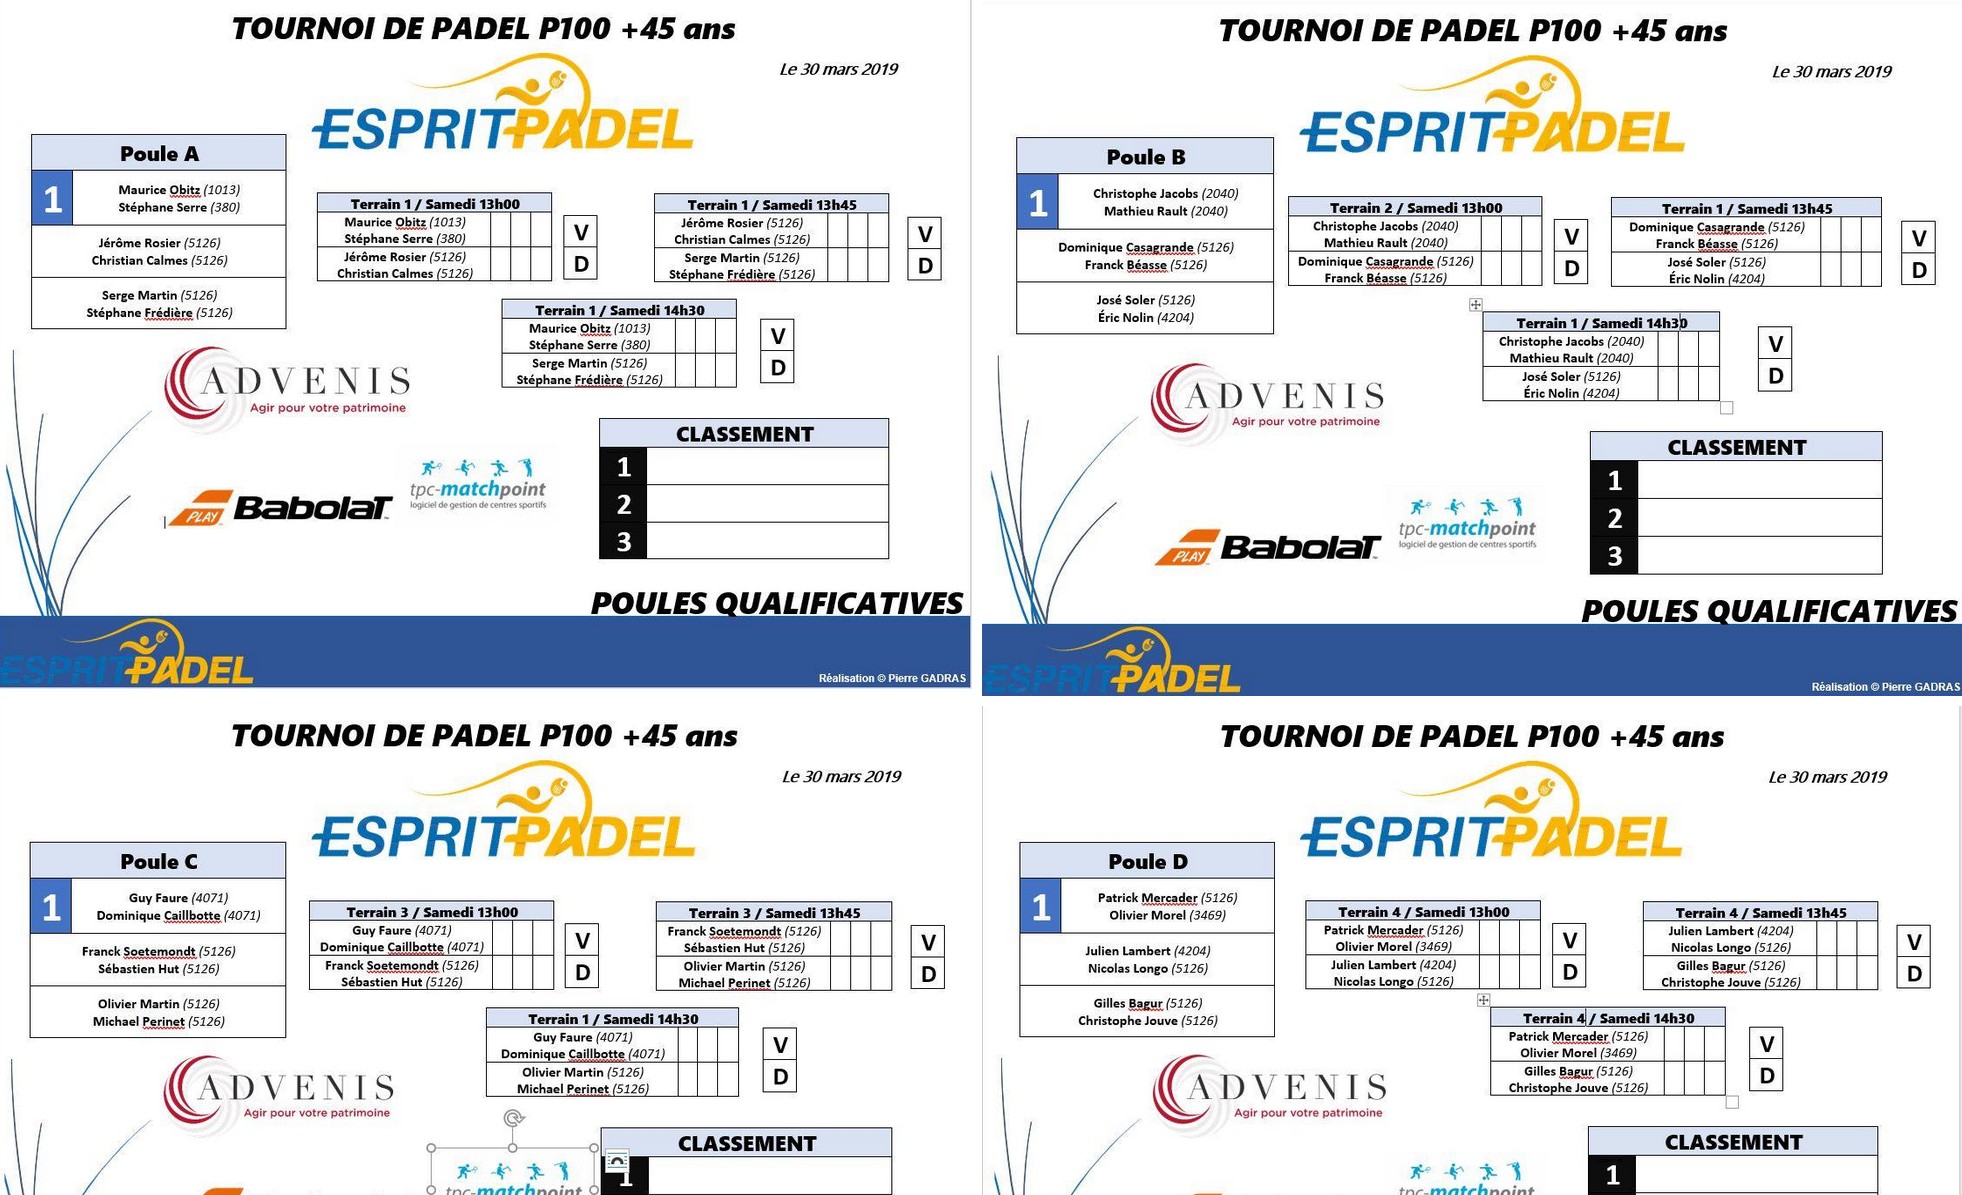 1er torneo de Lyon +45 años en Esprit Padel